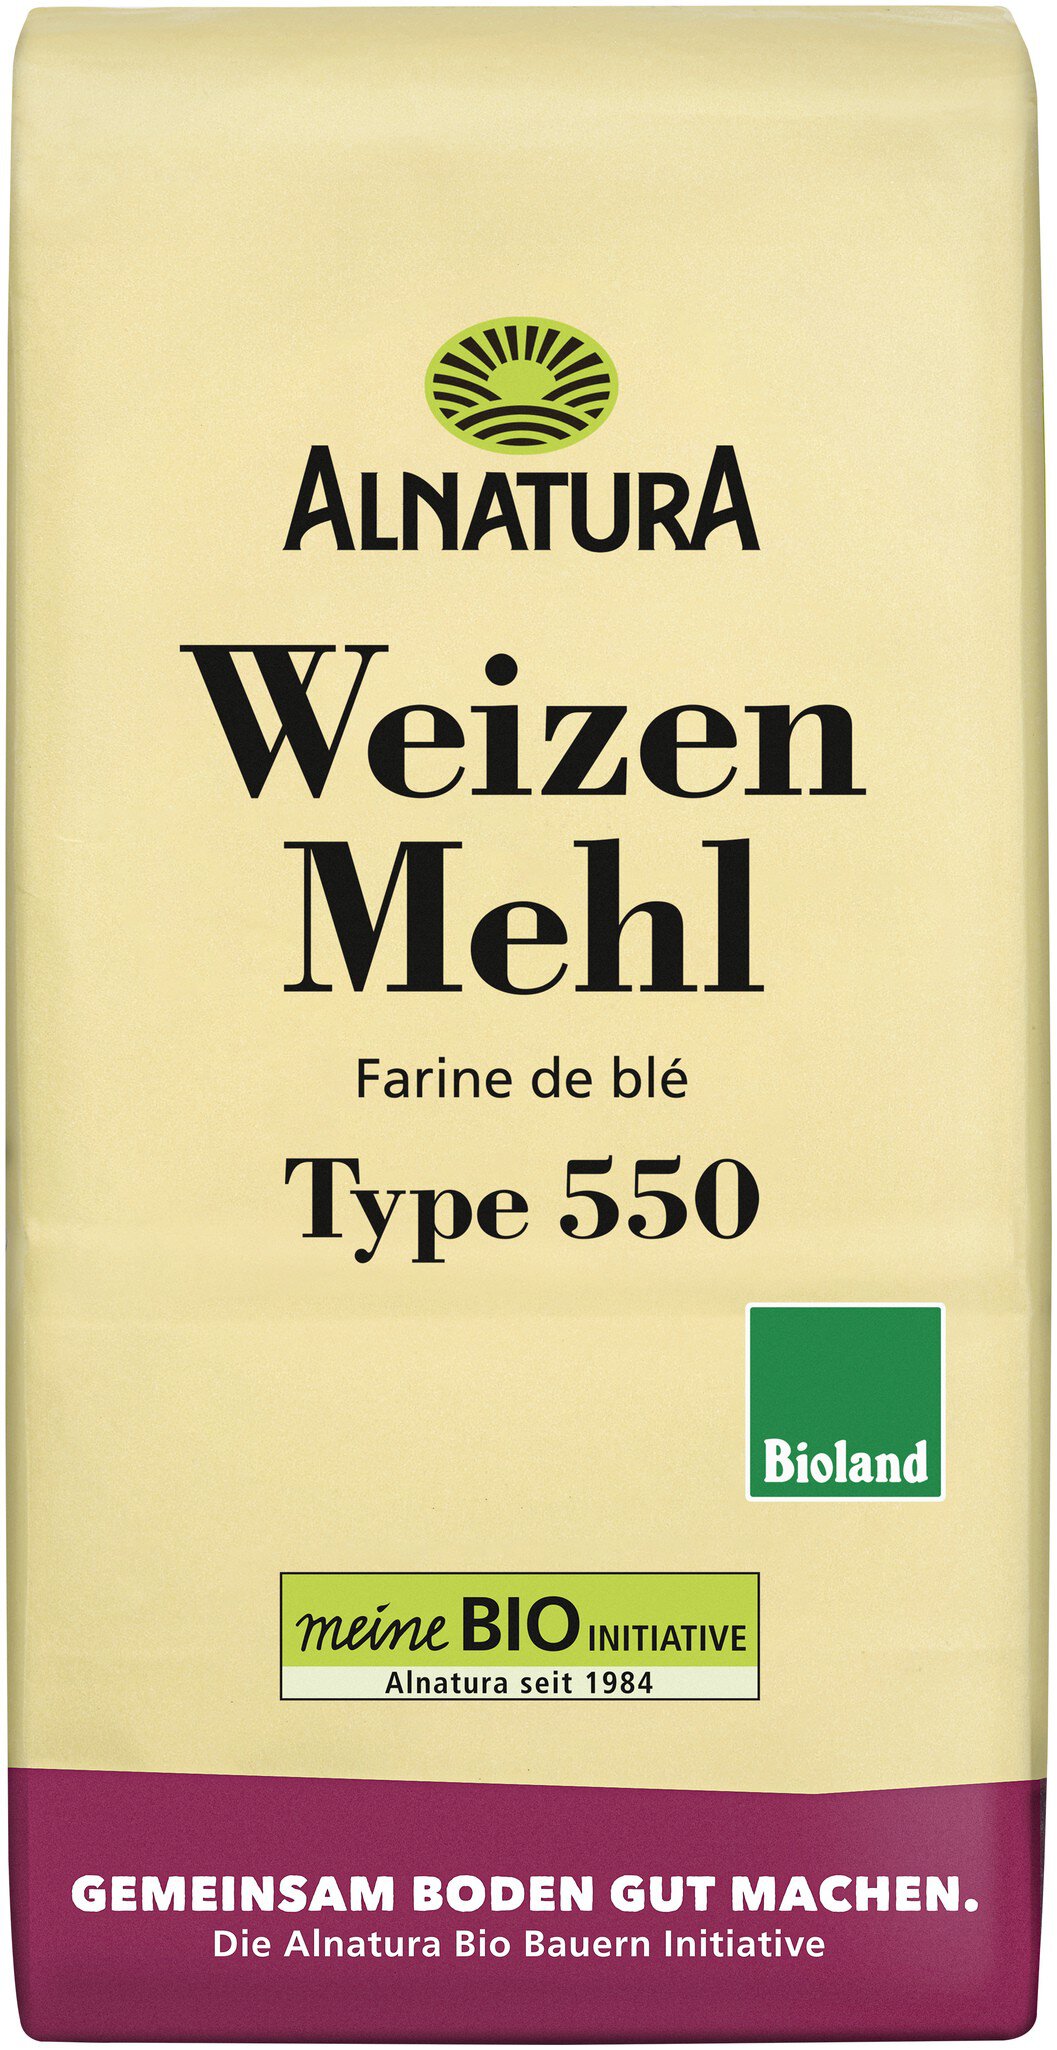 (1000 Alnatura g) in Weizenmehl 550 Bio-Qualität Type von